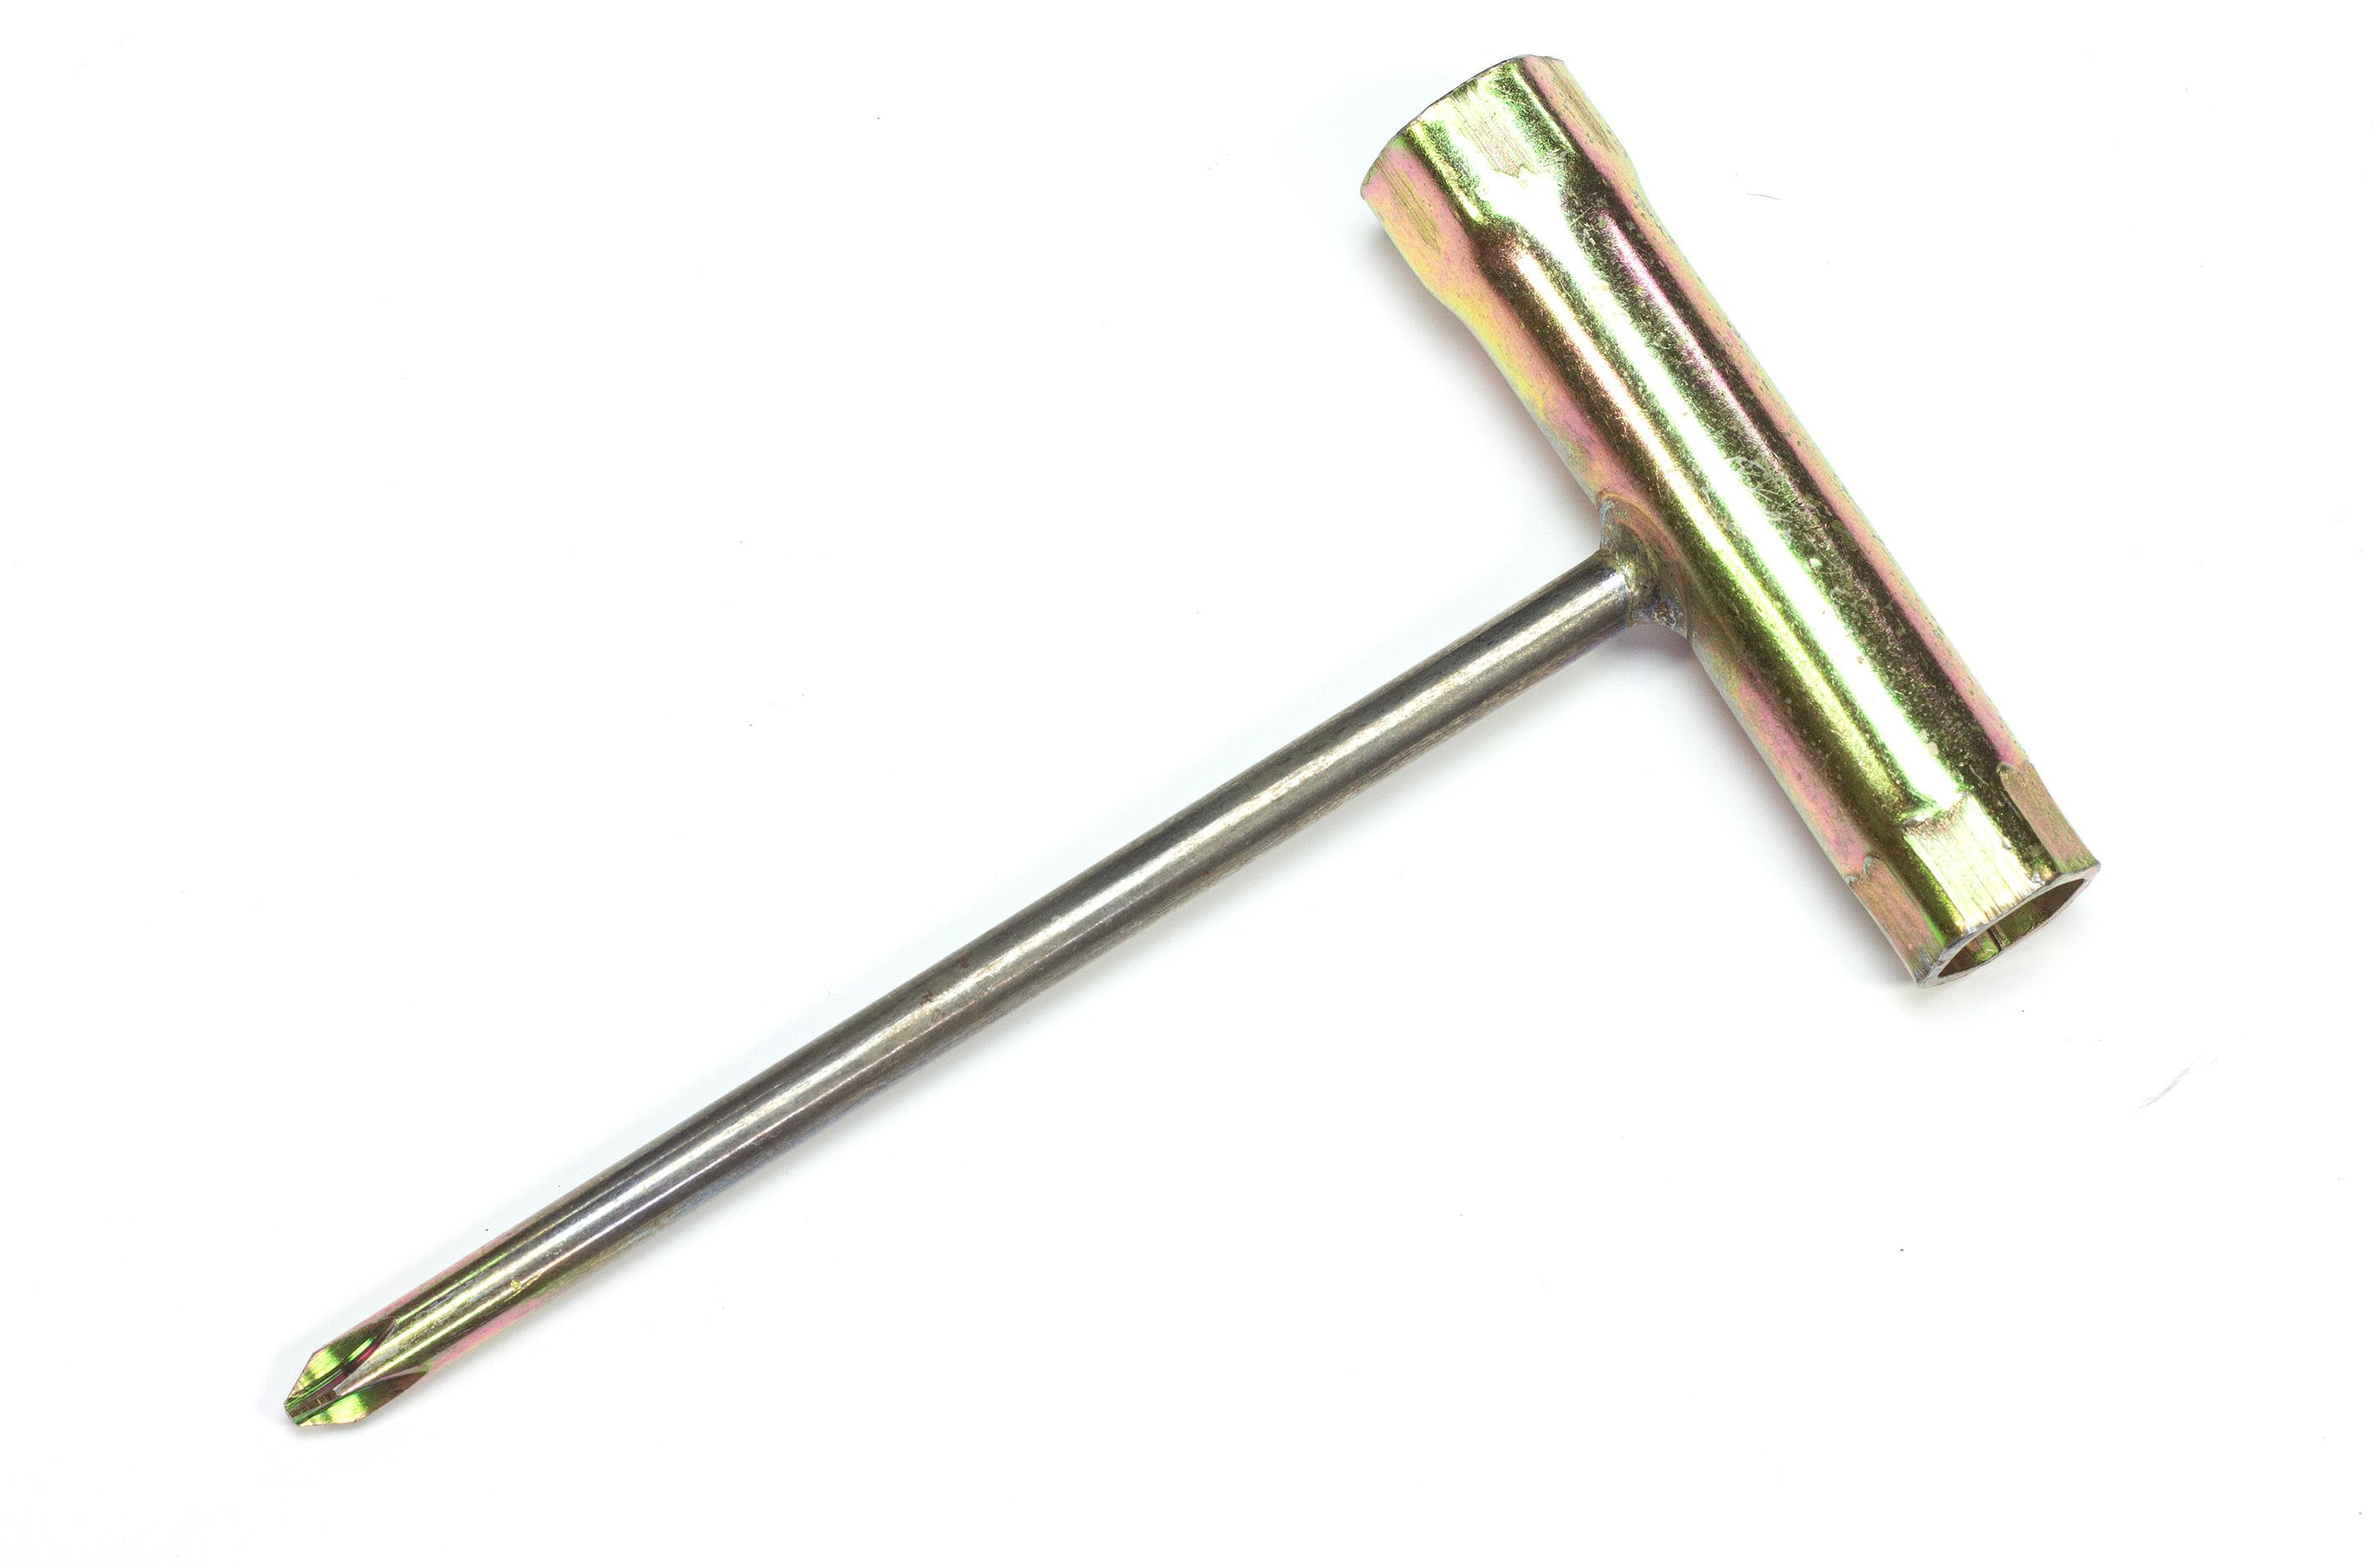 y0851 Spark plug wrench, Zenoah / CY